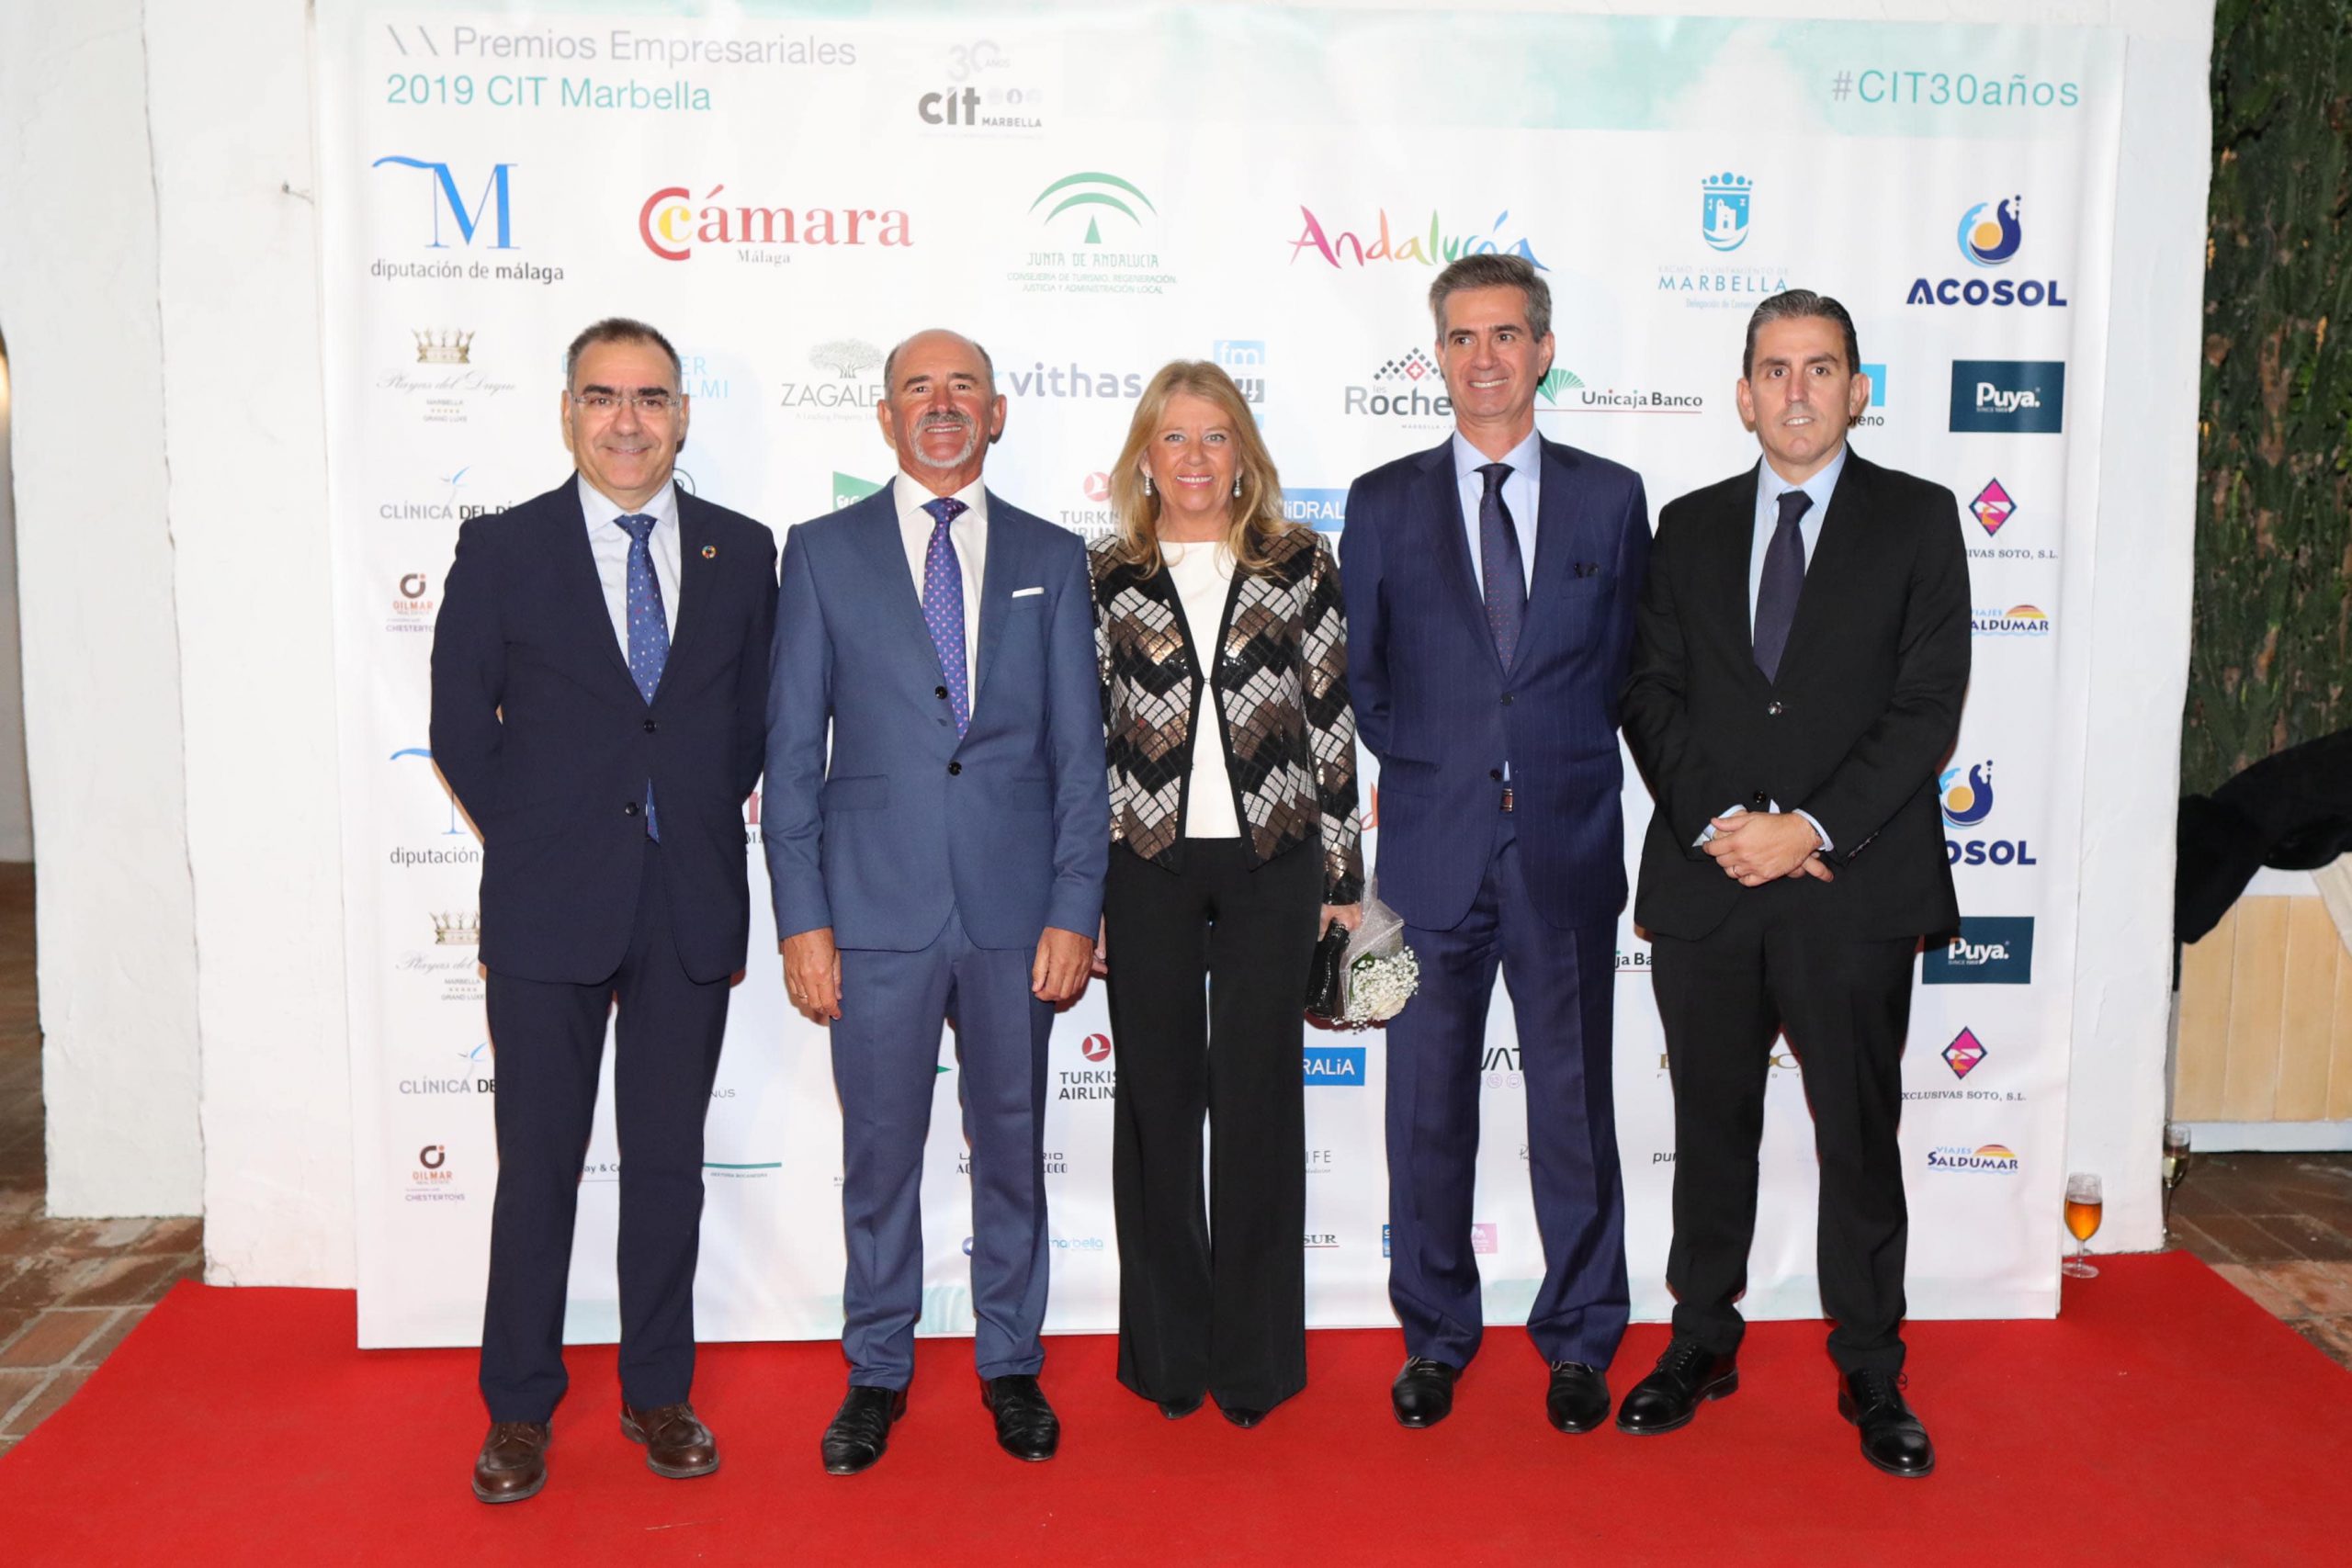 Celebrados este viernes los XX Premios Empresariales CIT Marbella 2019